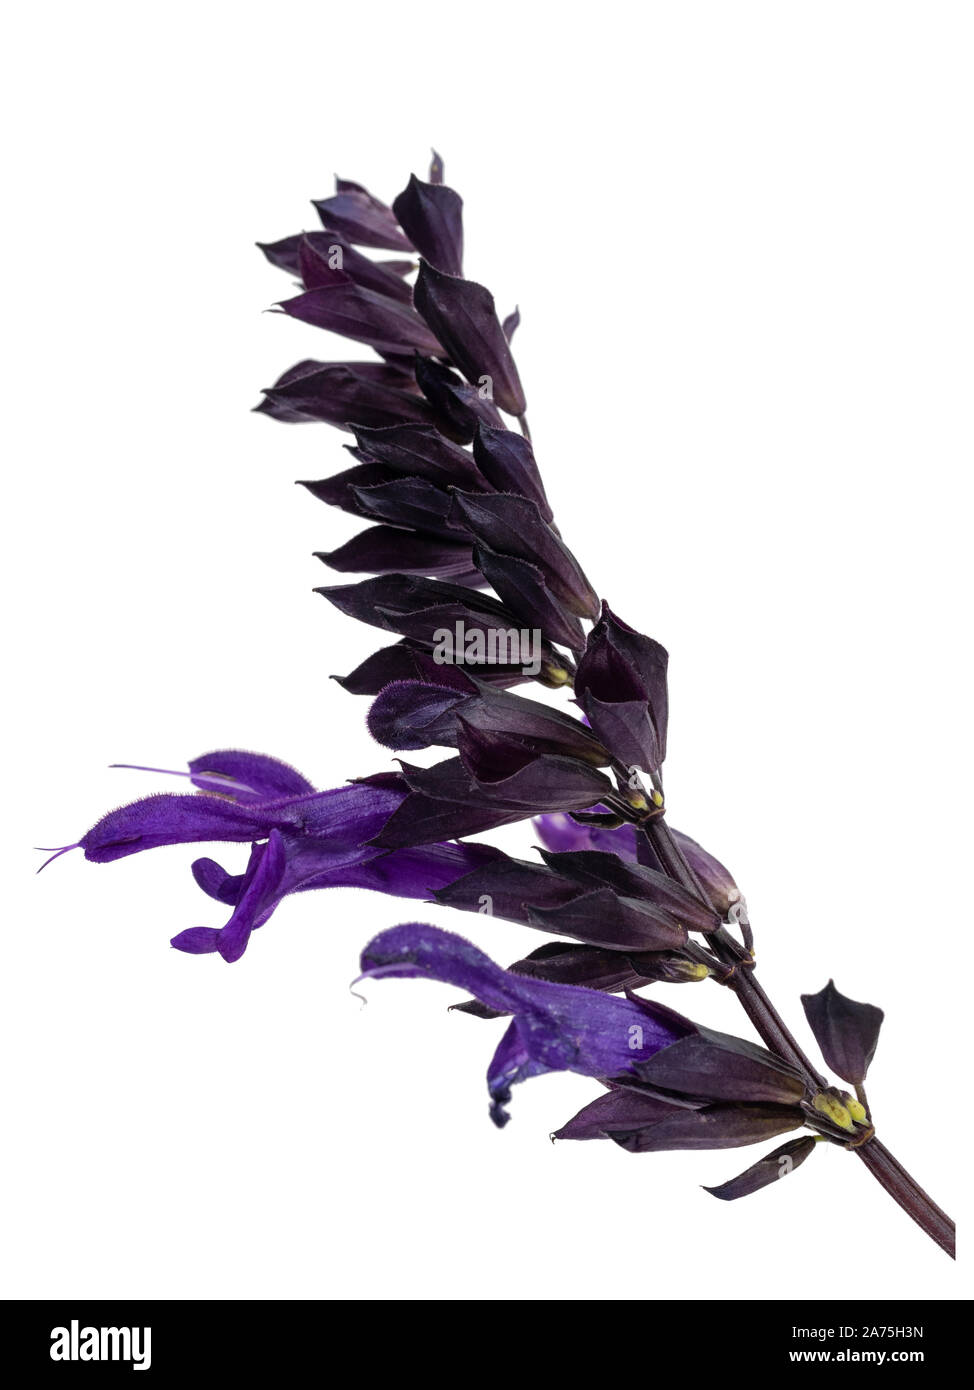 Fleur simple tige de la Purple a fleuri la moitié de la sauge arbustive hardy, Salvia 'Amistad' sur un fond blanc Banque D'Images